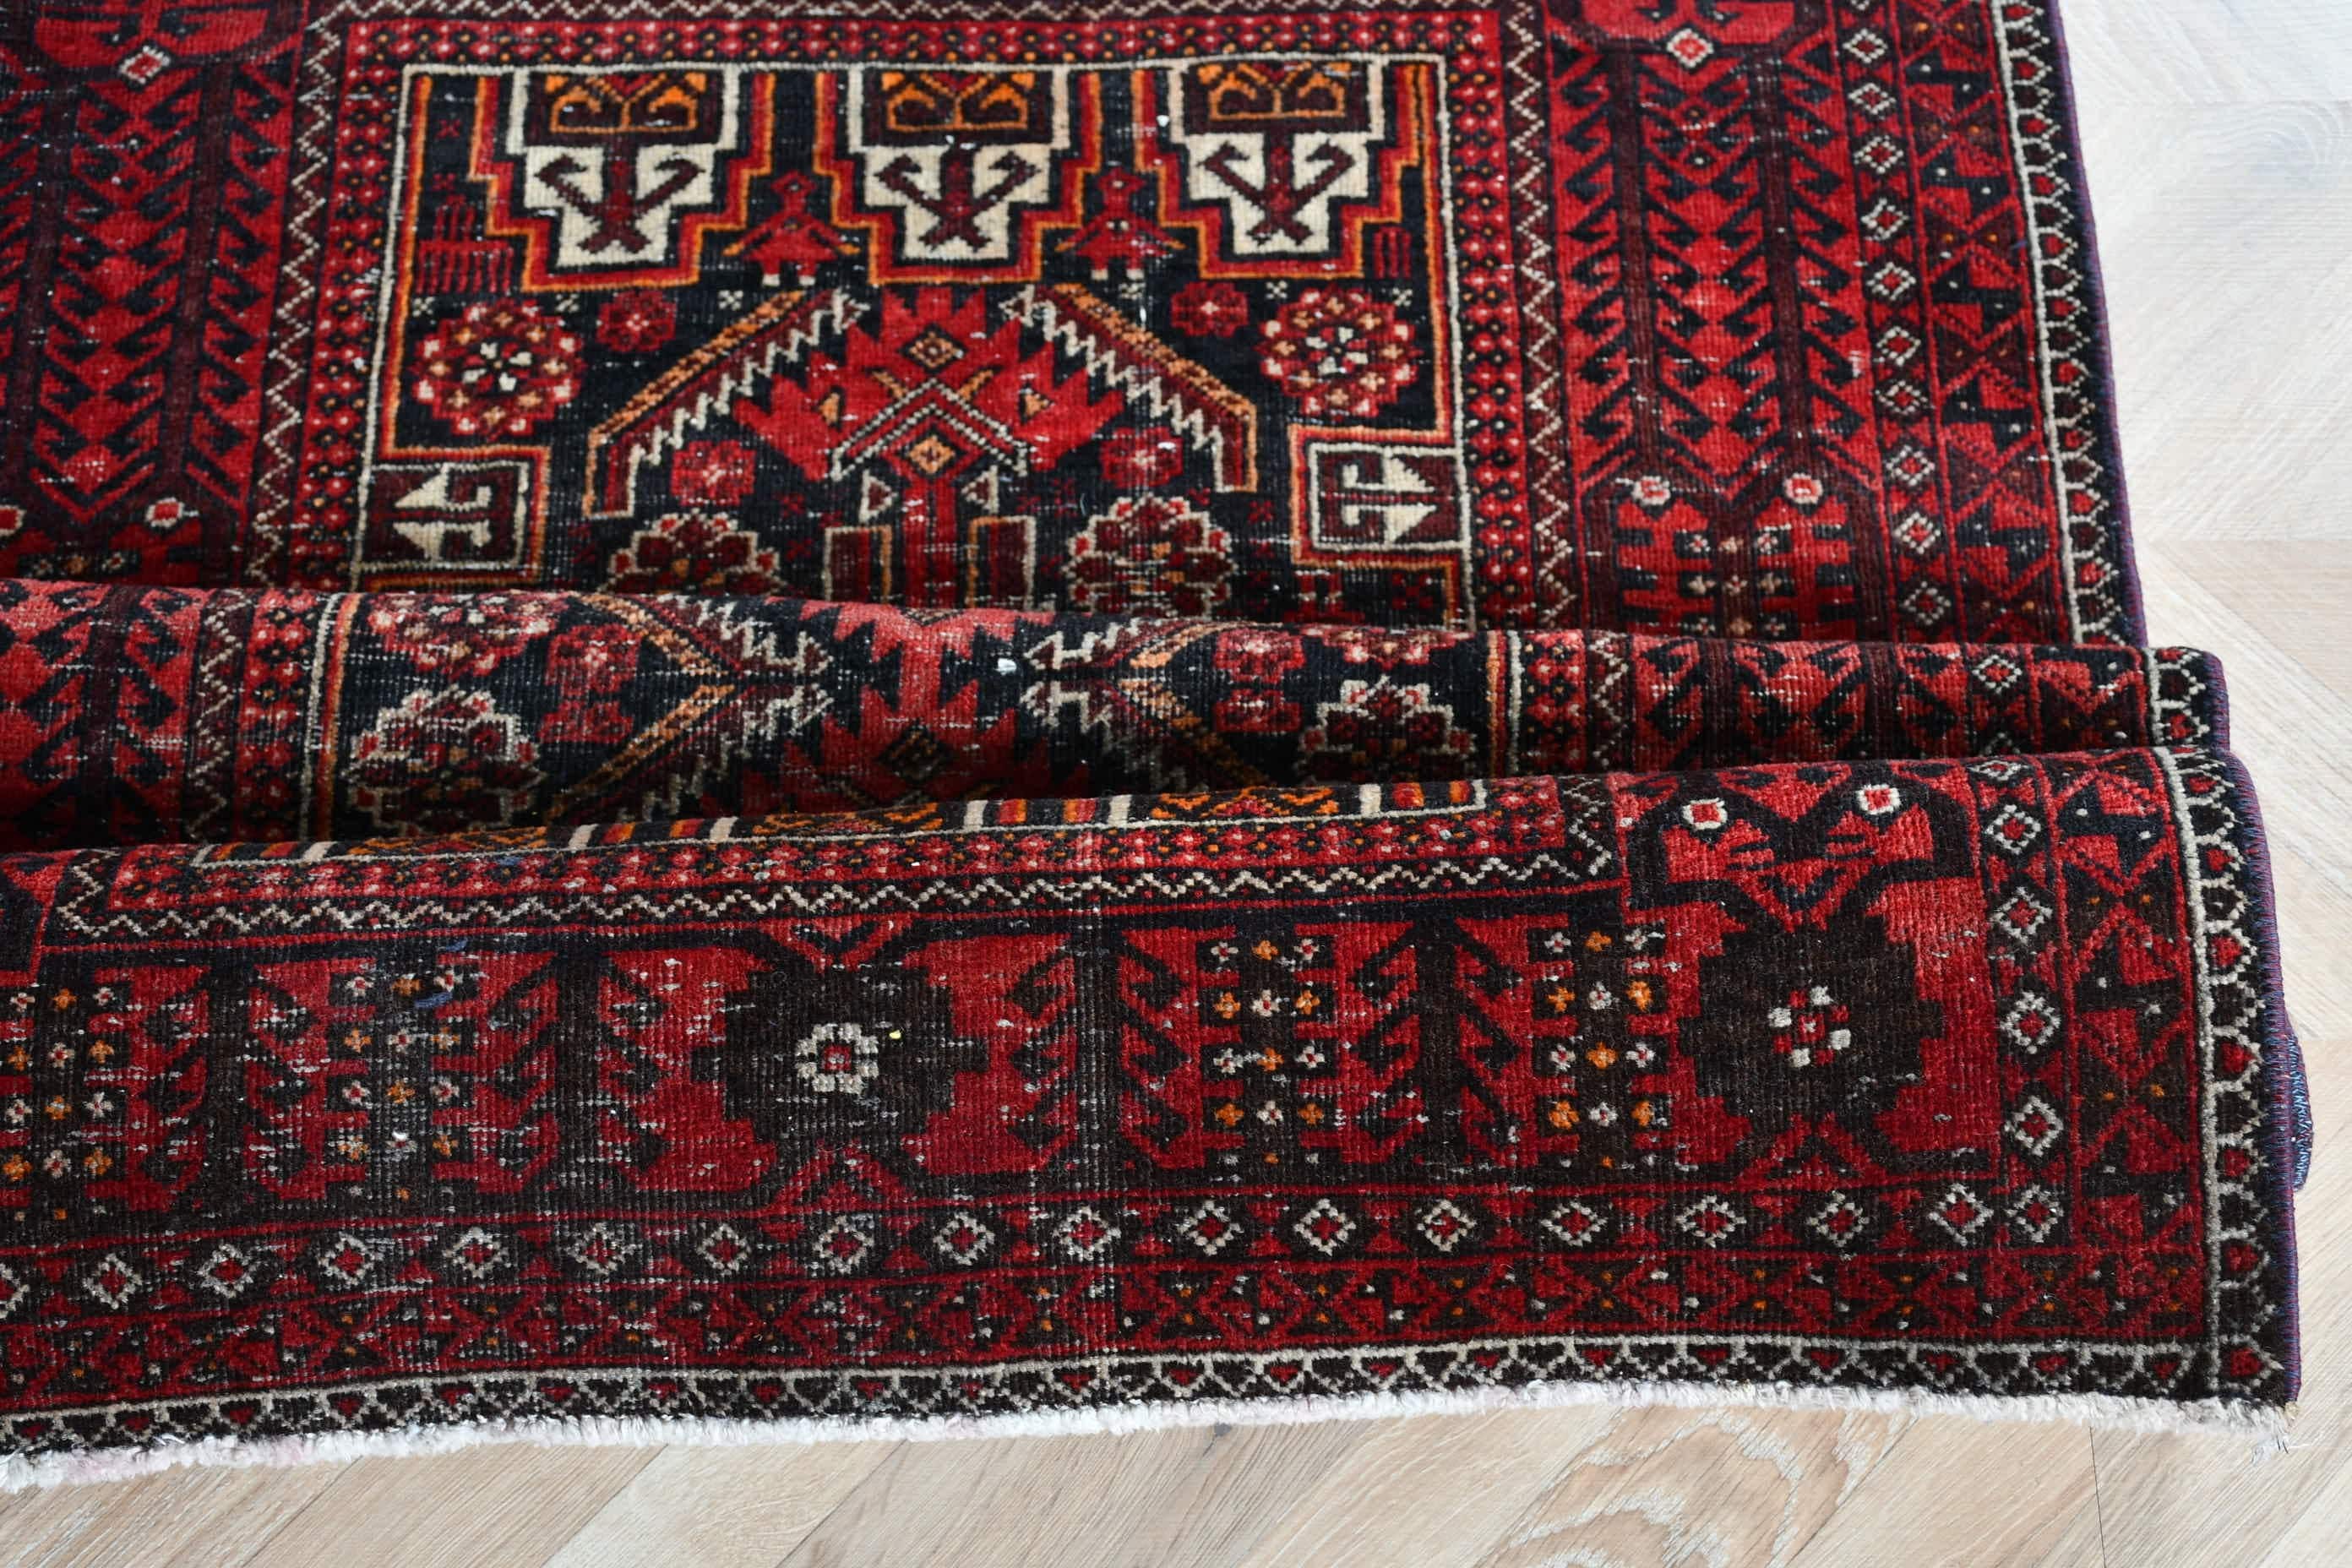 Rugs for Nursery, Bedroom Rug, Turkish Rug, Oriental Rug, Nursery Rug, Kitchen Rug, Red Oushak Rugs, Vintage Rugs, 2.9x5.5 ft Accent Rug